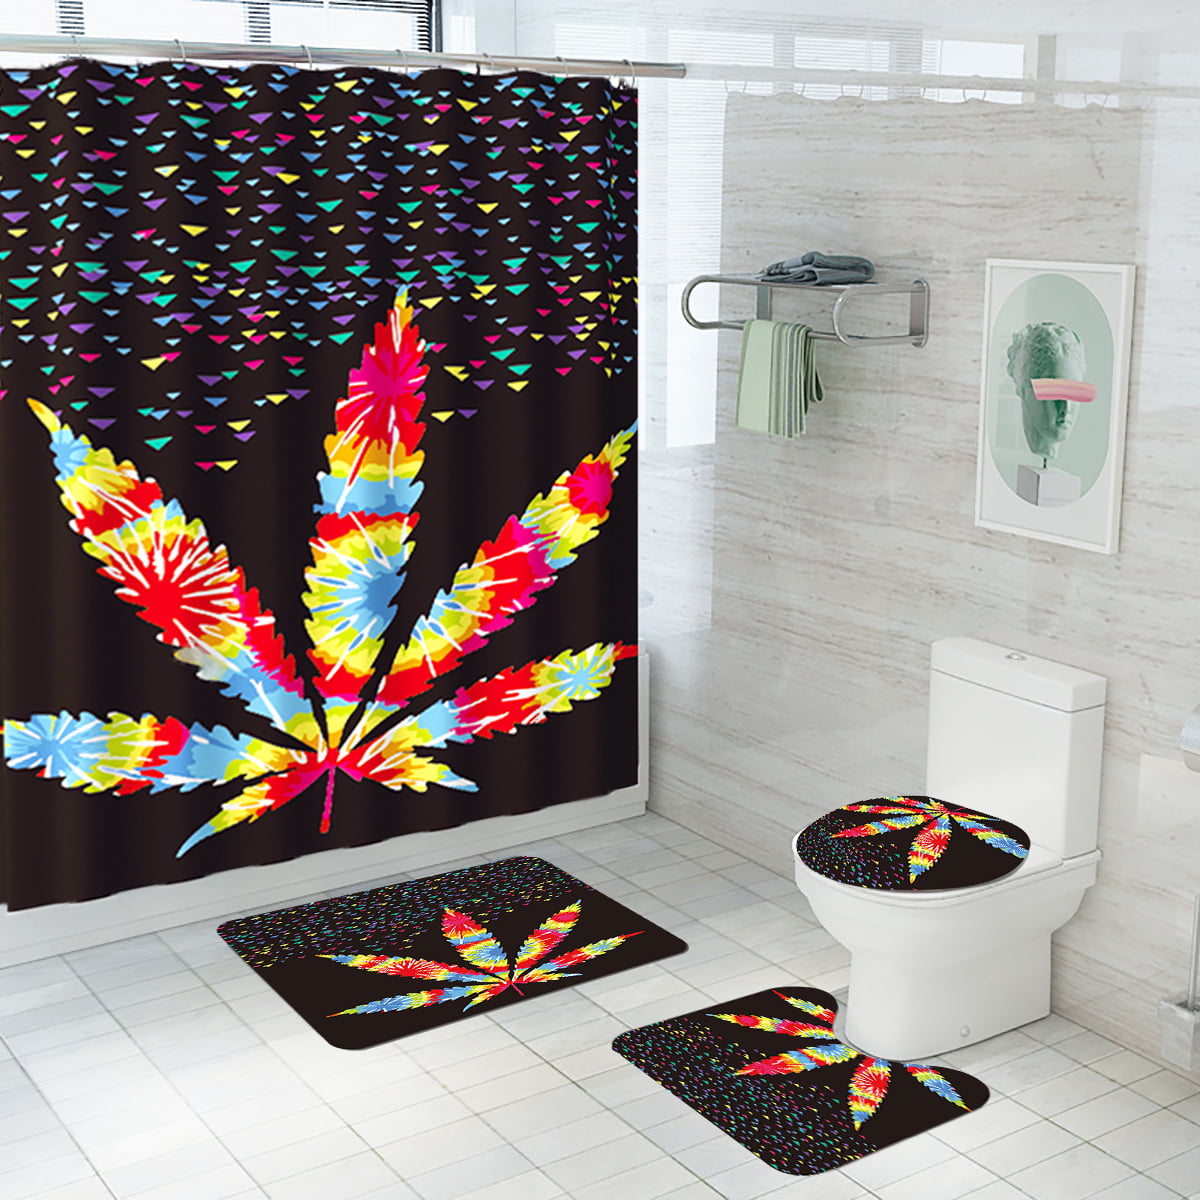 Details about   4 Pcs Blue Butterfly Print Shower Curtain Carpet Cover Toilet Cover Bath Mat Set 